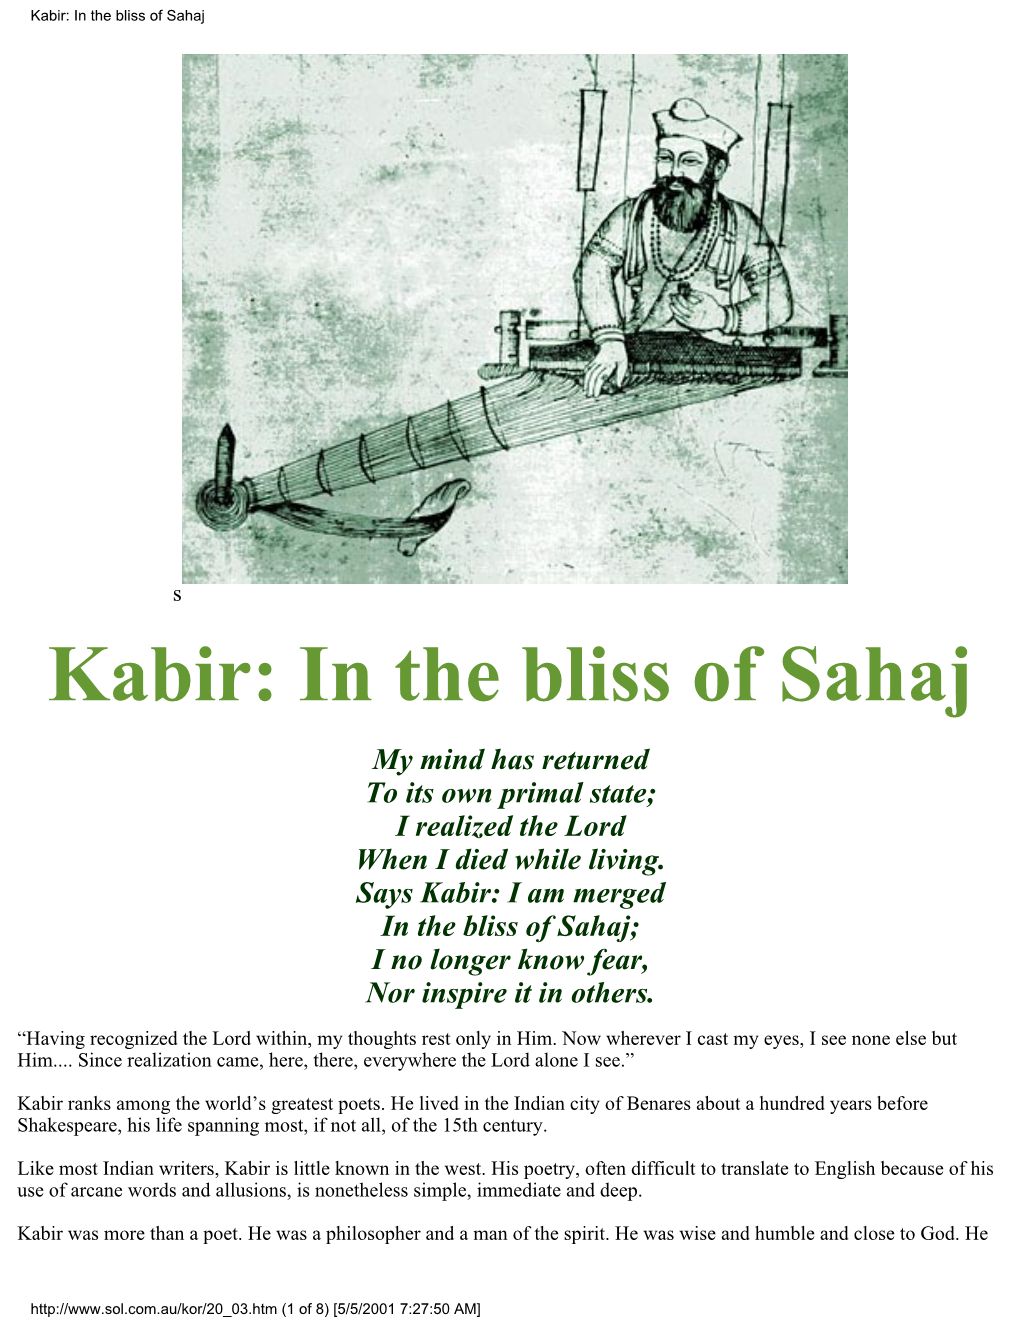 Kabir: in the Bliss of Sahaj